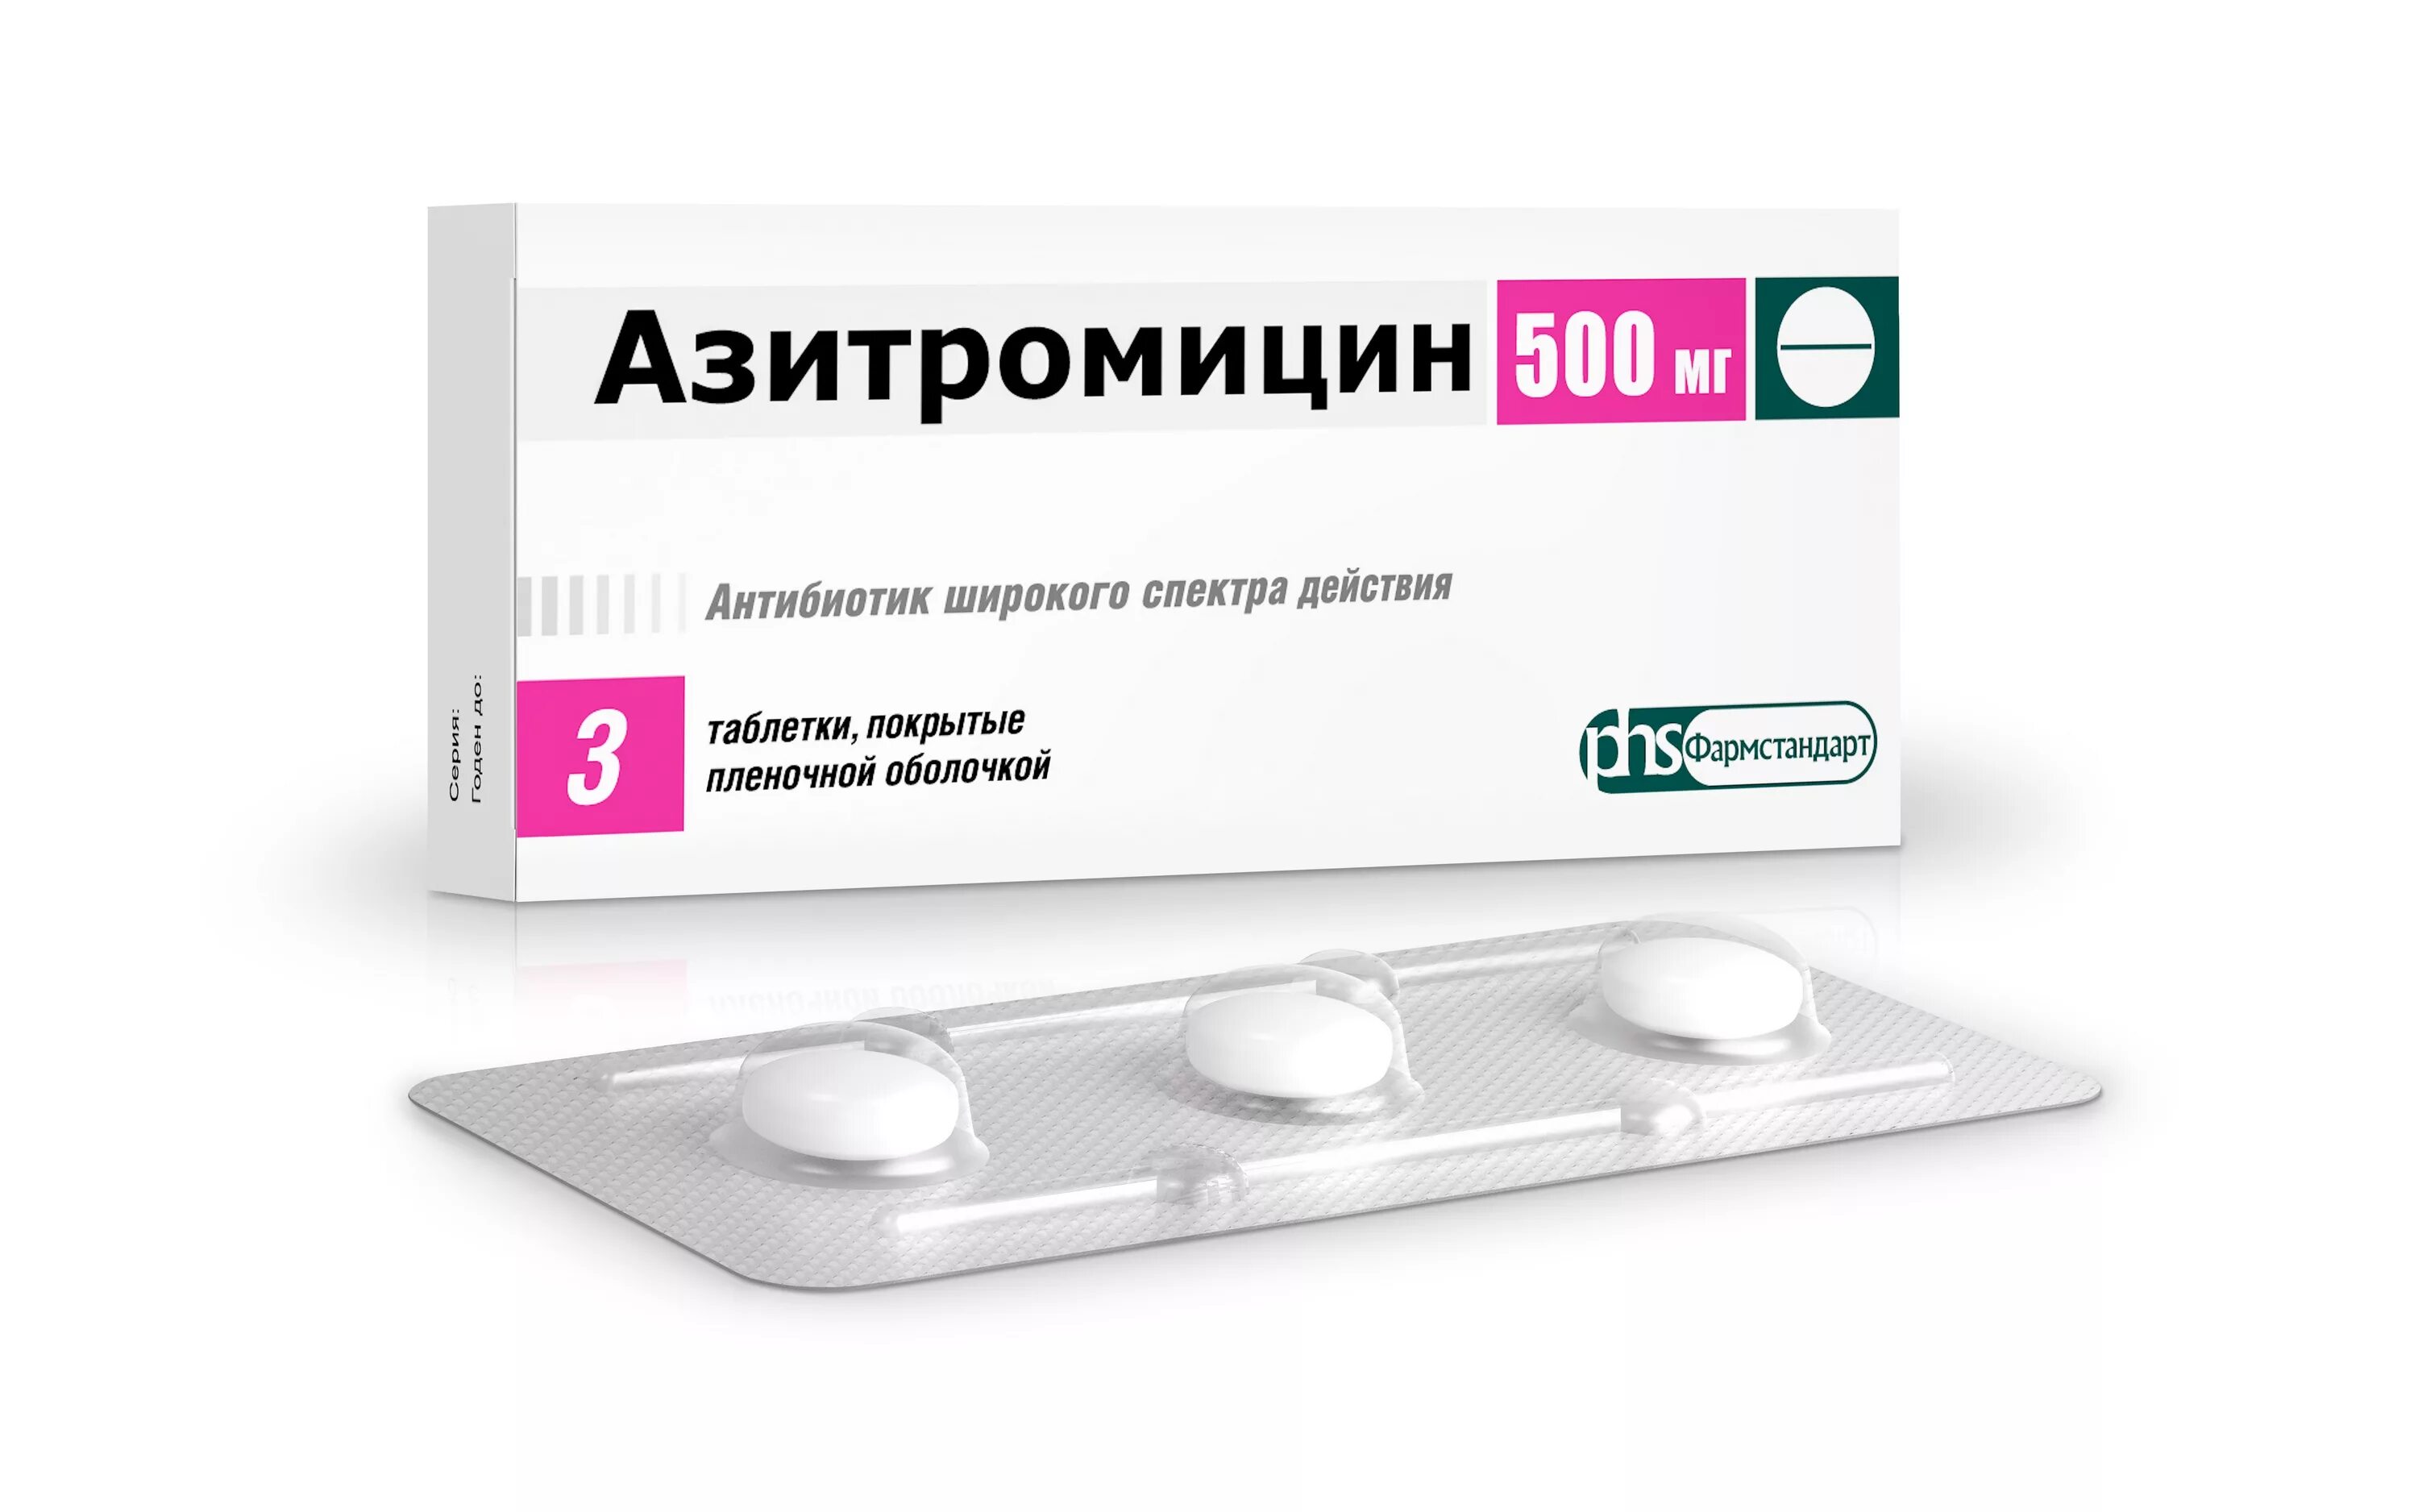 Азитромицин 500 мг. Азитромицин таблетки 500 мг. Азитромицин 500 мг 3. Азитромицин 500 Фармстандарт. Лучший антибиотик гриппа